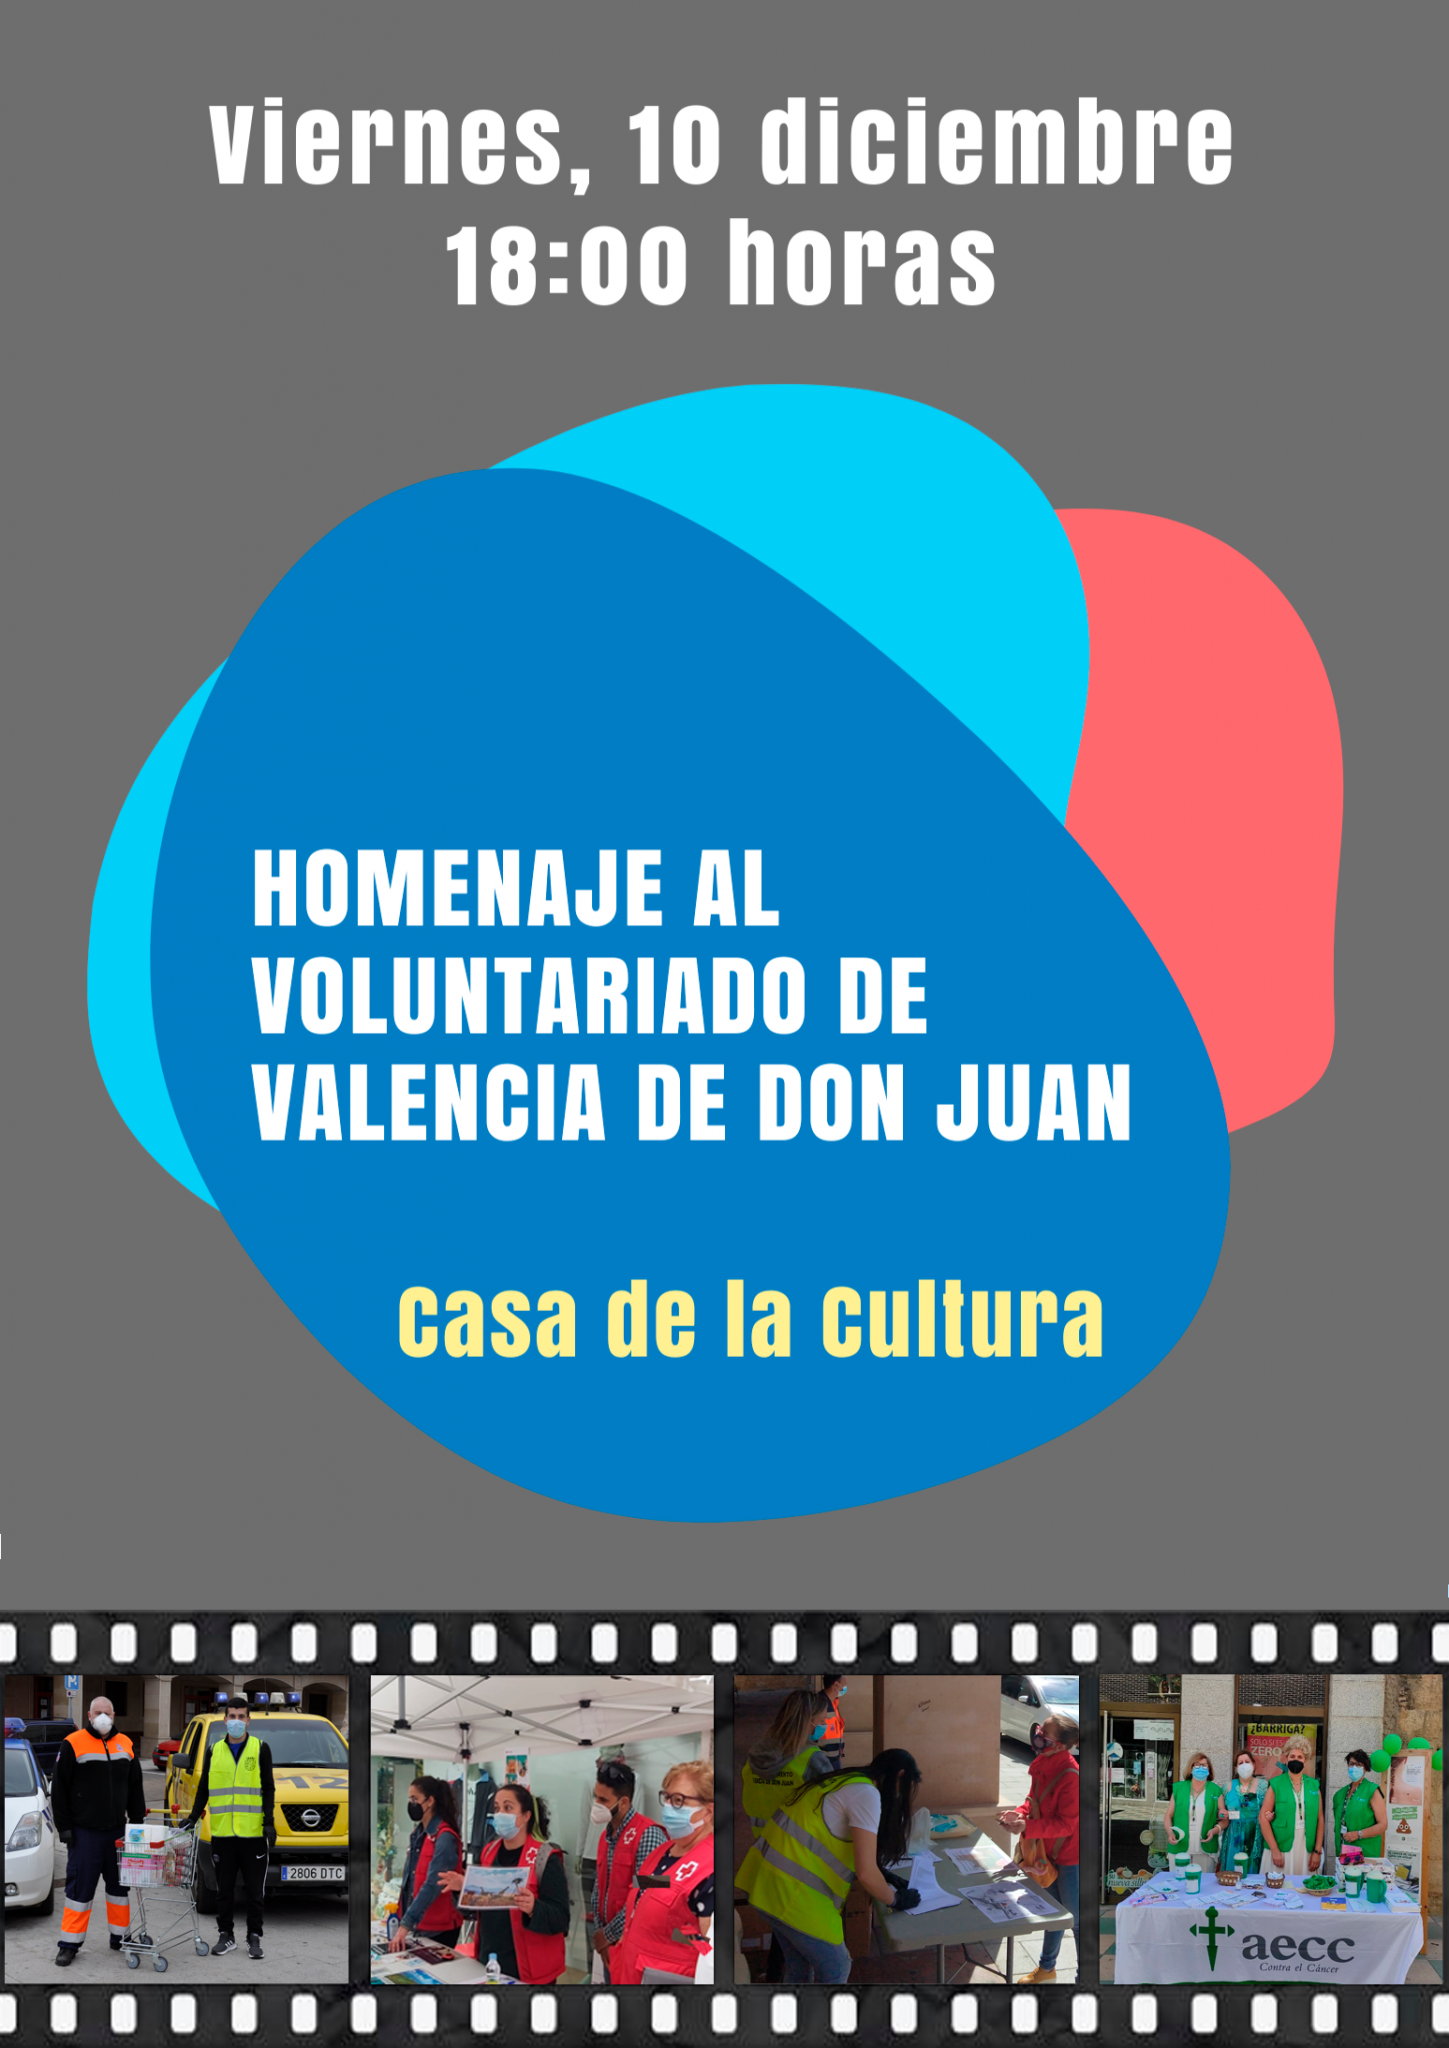 Homenaje al voluntariado de Valencia de Don Juan